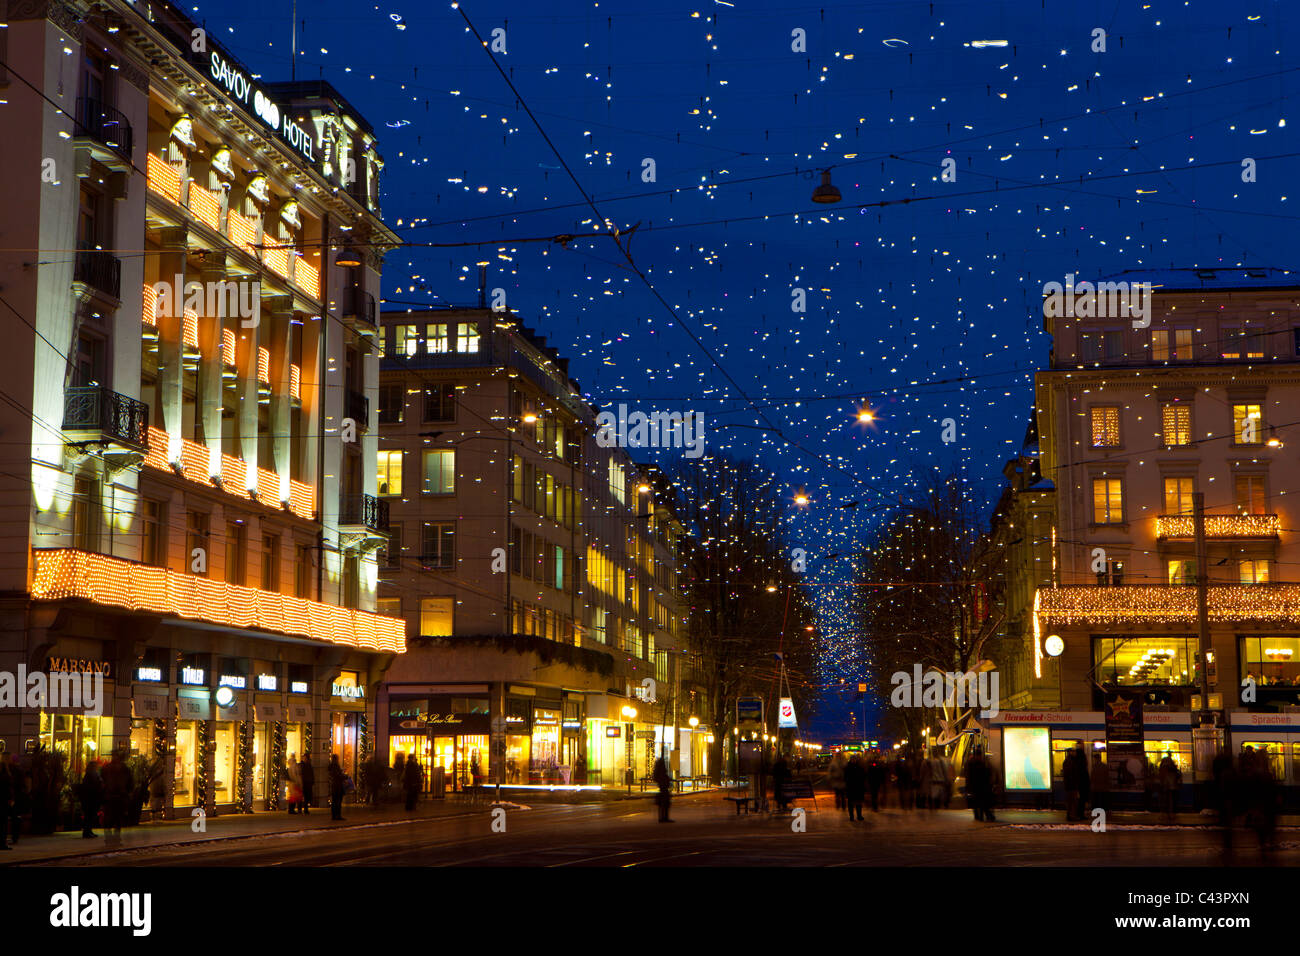 Zurich, Suisse, le canton de Zurich, ville, ville, rue, Bahnhofstrasse, maisons, maisons, crépuscule, lumière, illumination, Noël, li Banque D'Images